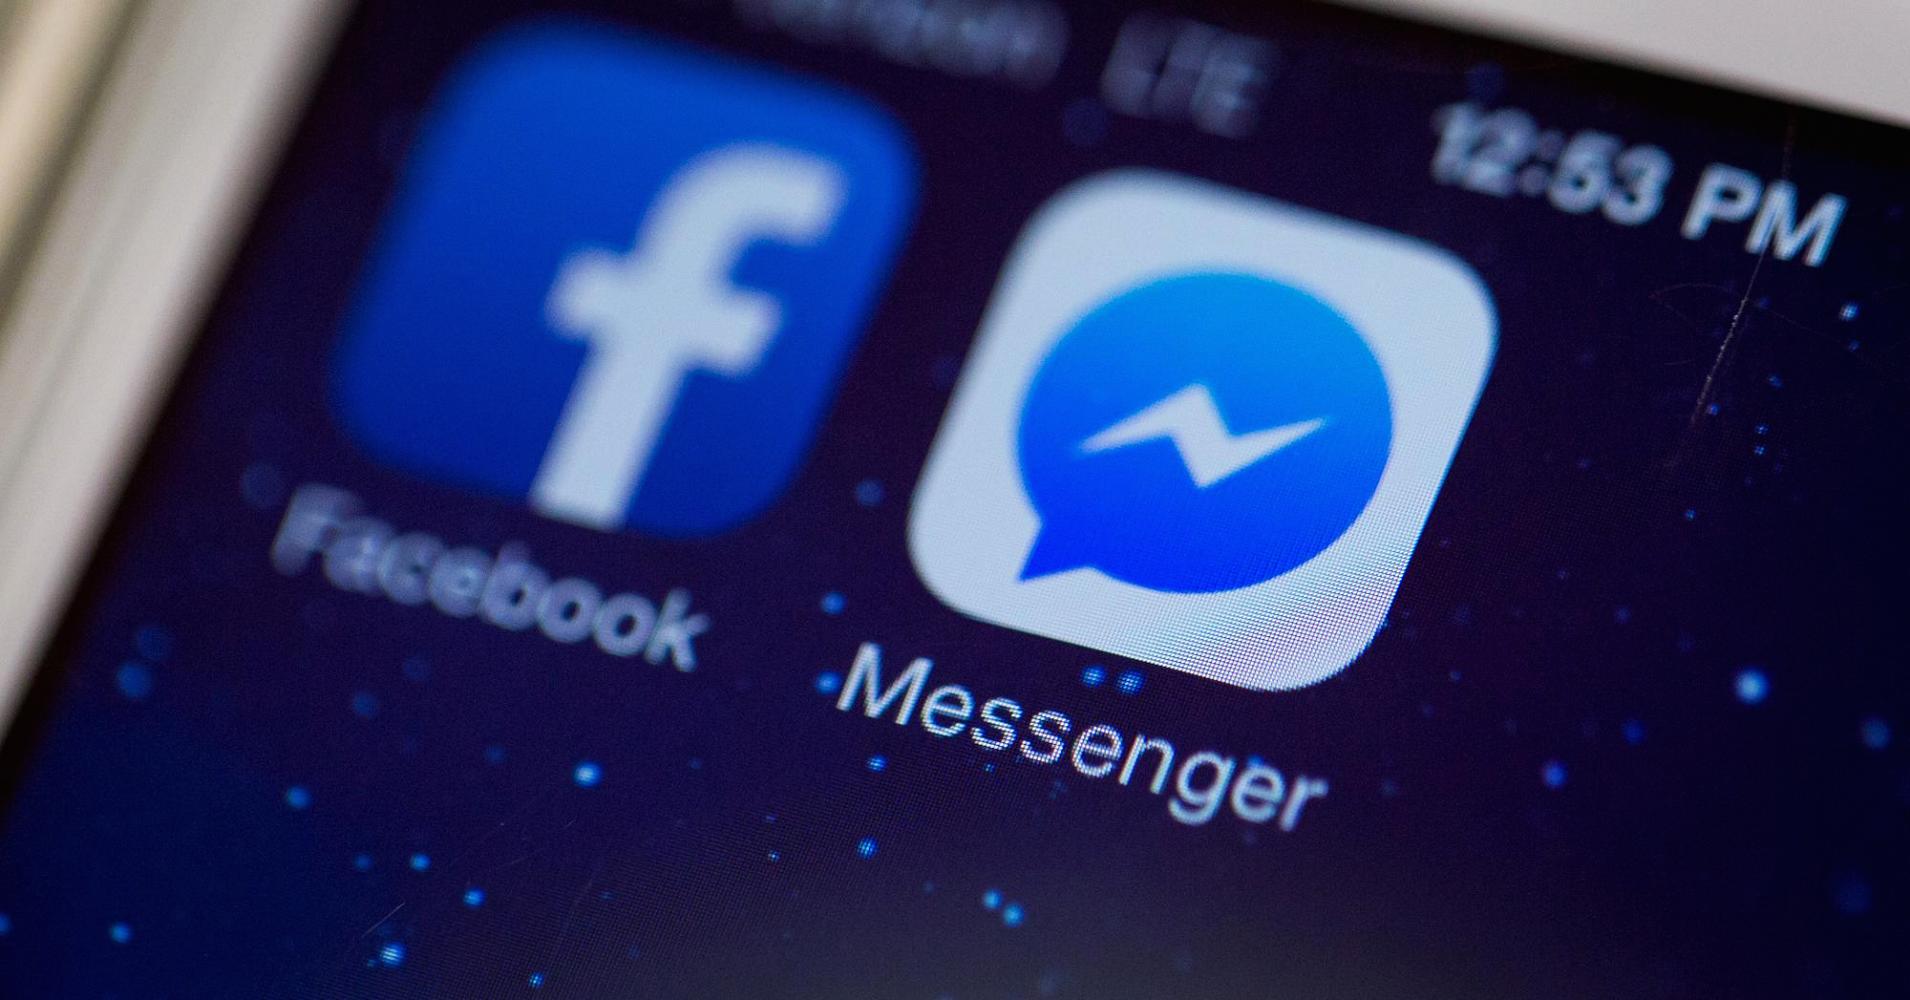 ไม่เยอะก็แปลก Facebook เผยยอดผู้ใช้งาน Messenger ถึง 800 ล้านคนแล้ว